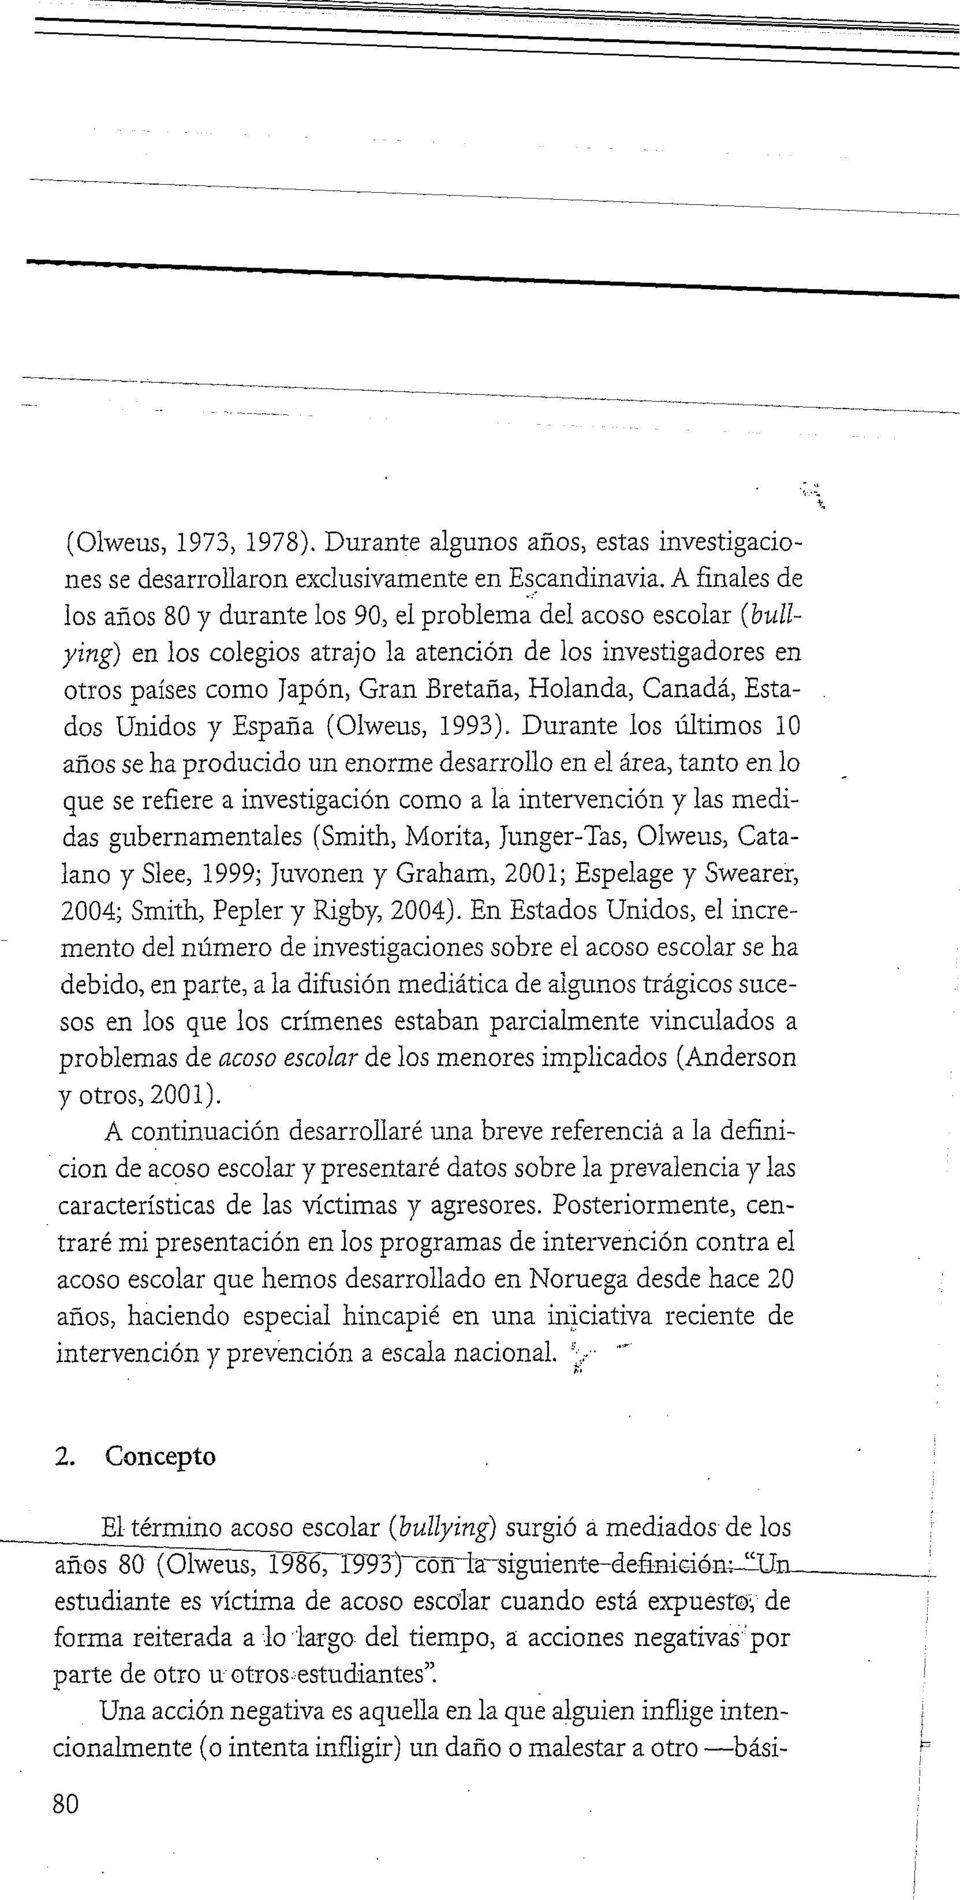 Estados Unidos y España (Olweus, 1993).